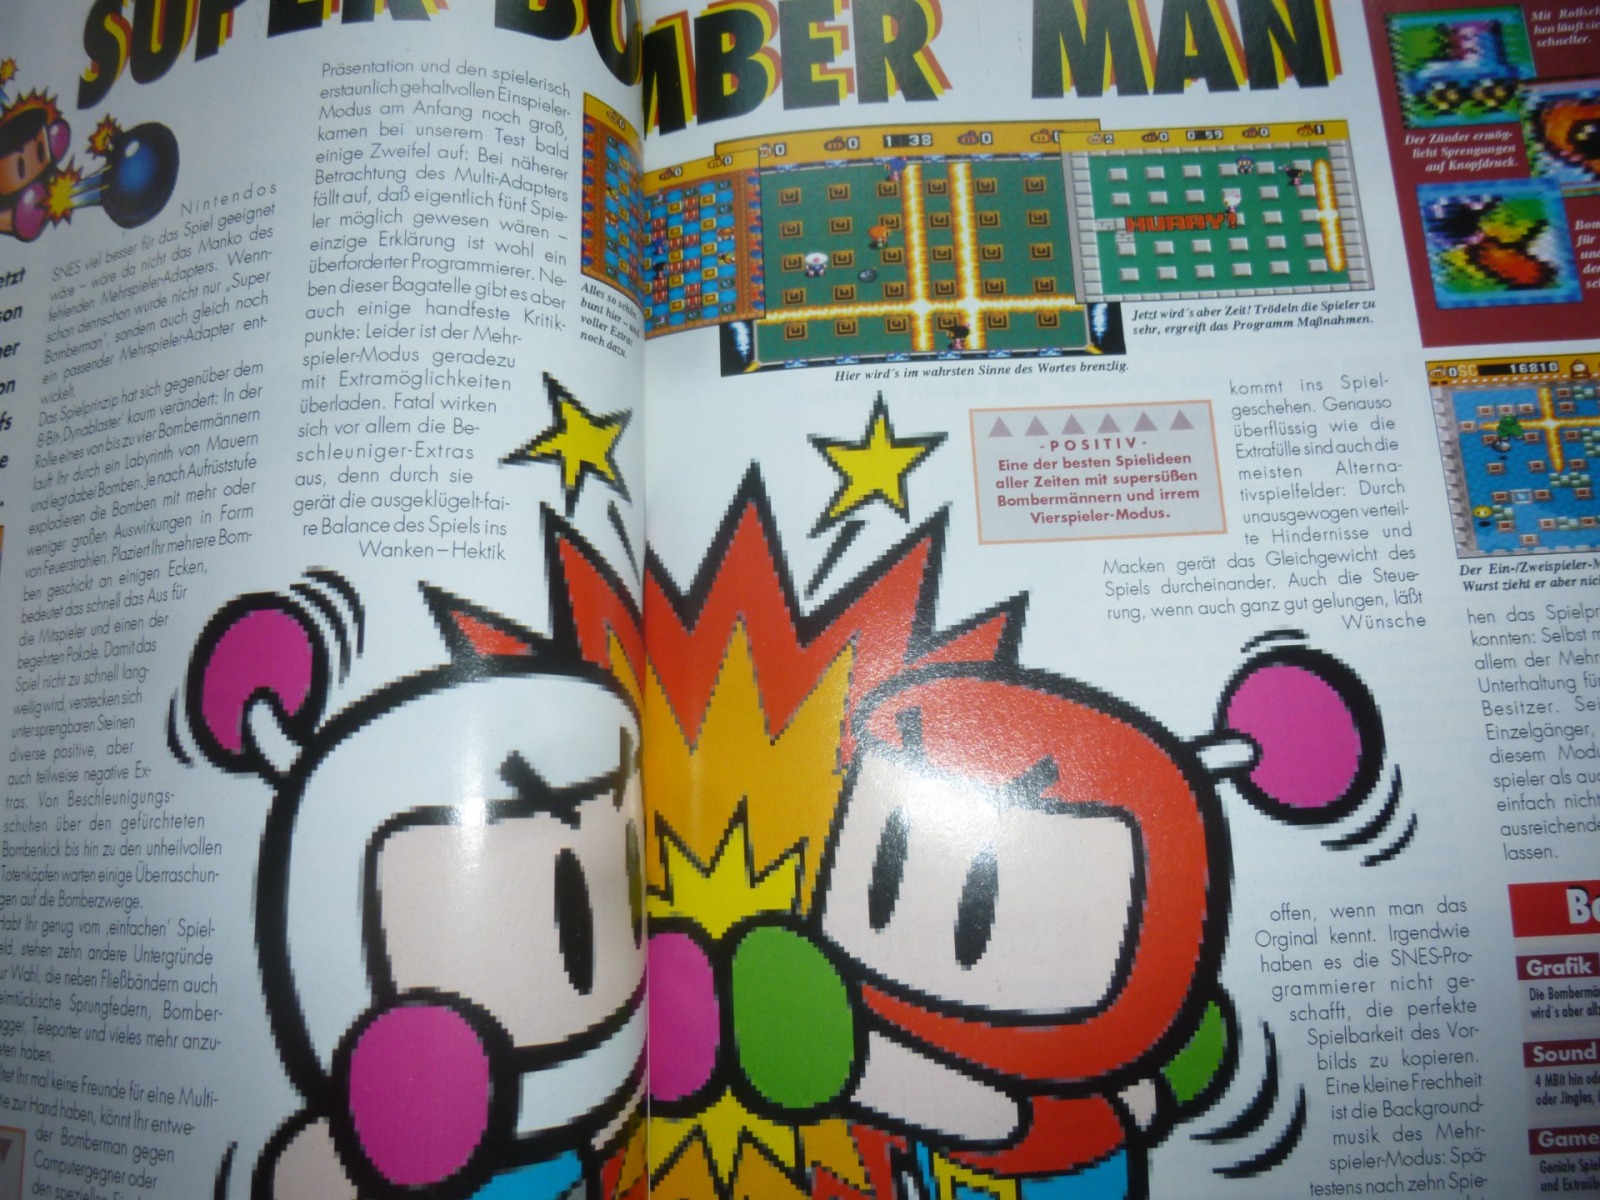 TOTAL Das unabhängige Magazin - 100 Nintendo - Ausgabe 9/93 1993 17